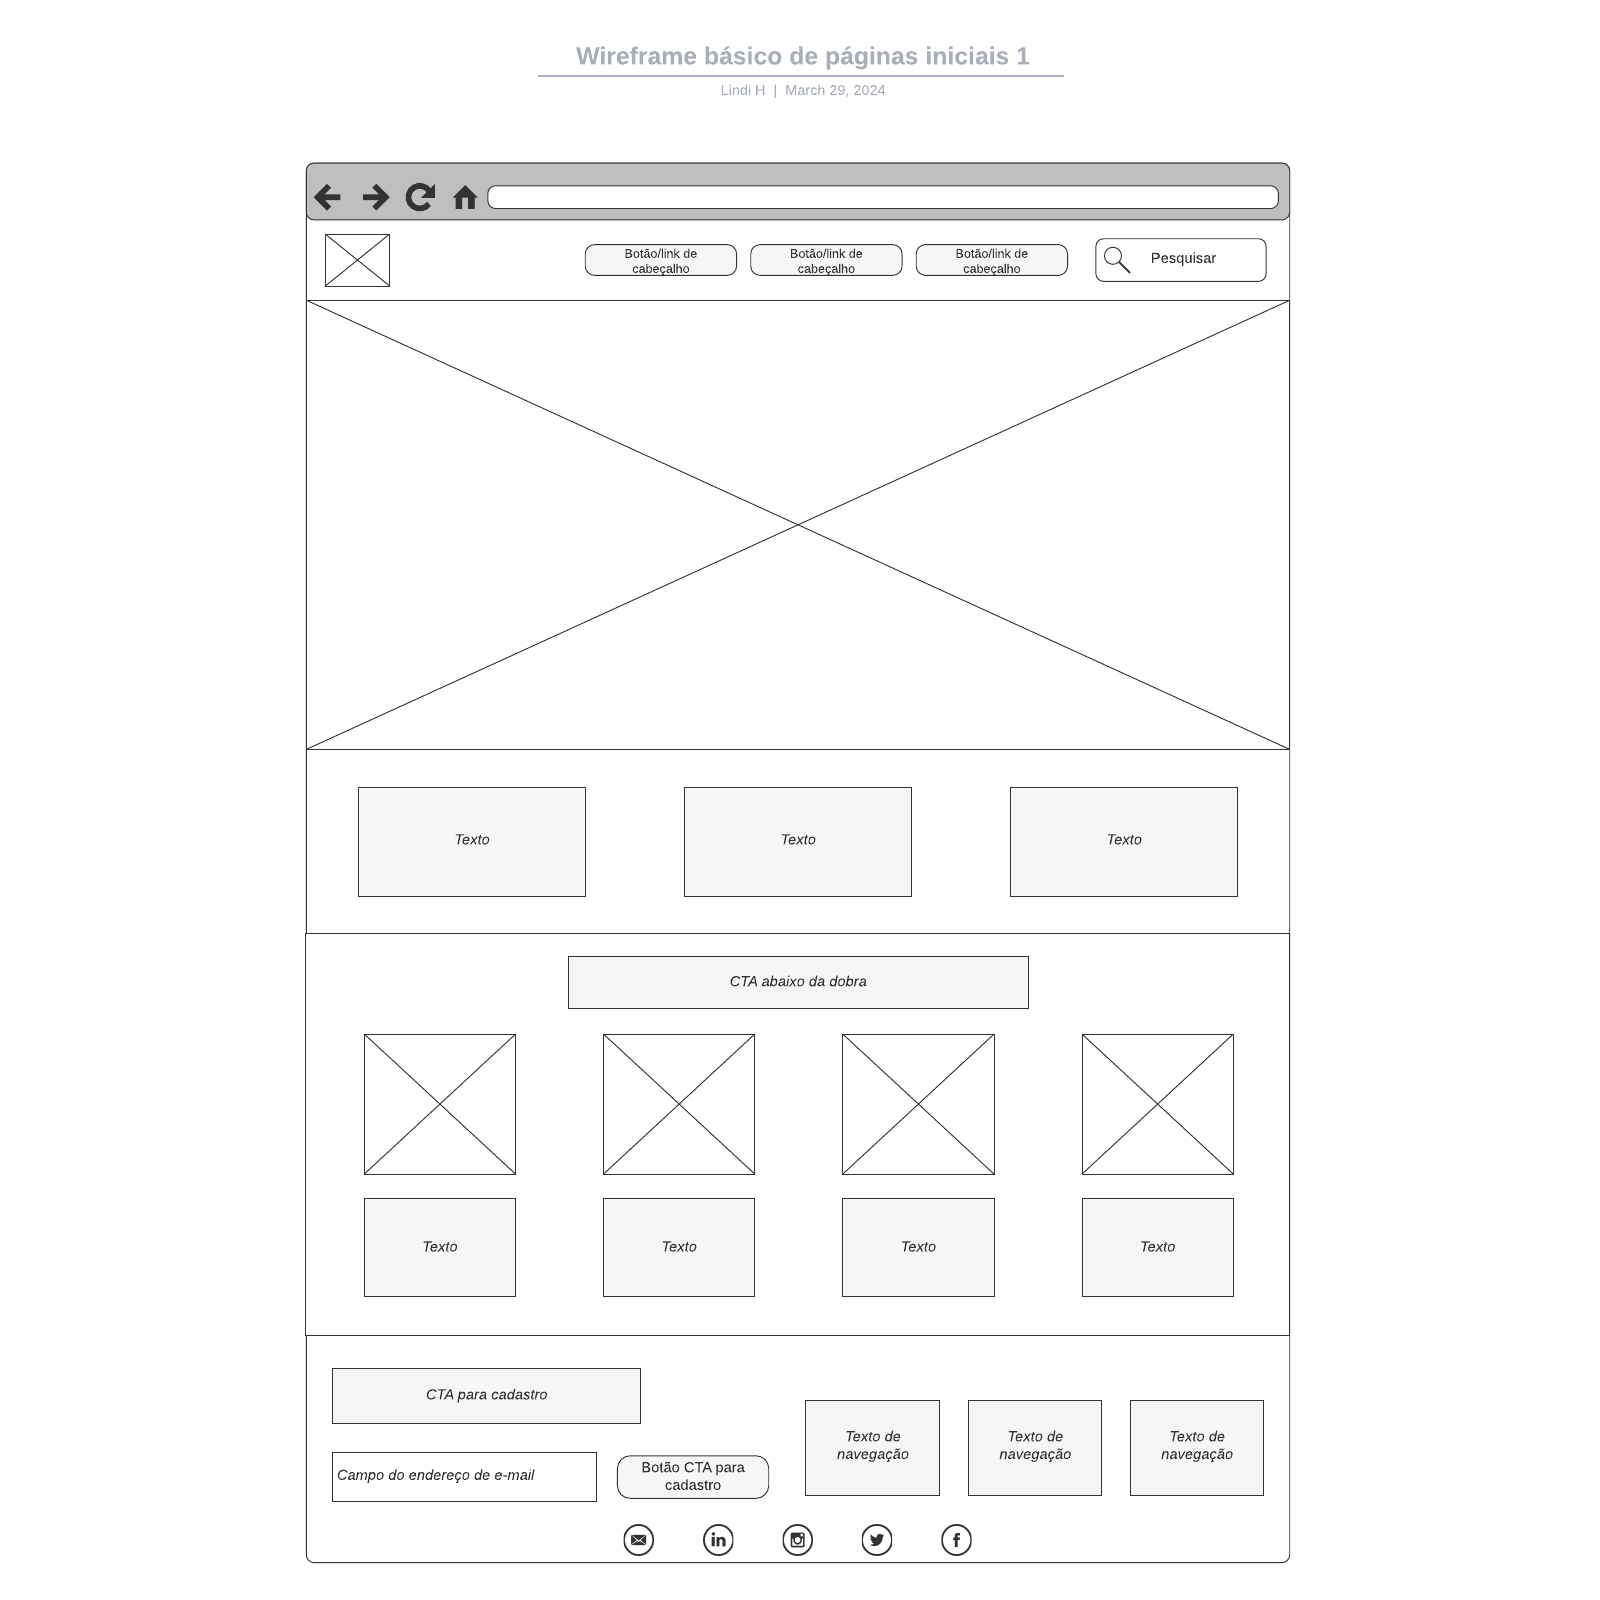 Wireframe básico de páginas iniciais 1 example